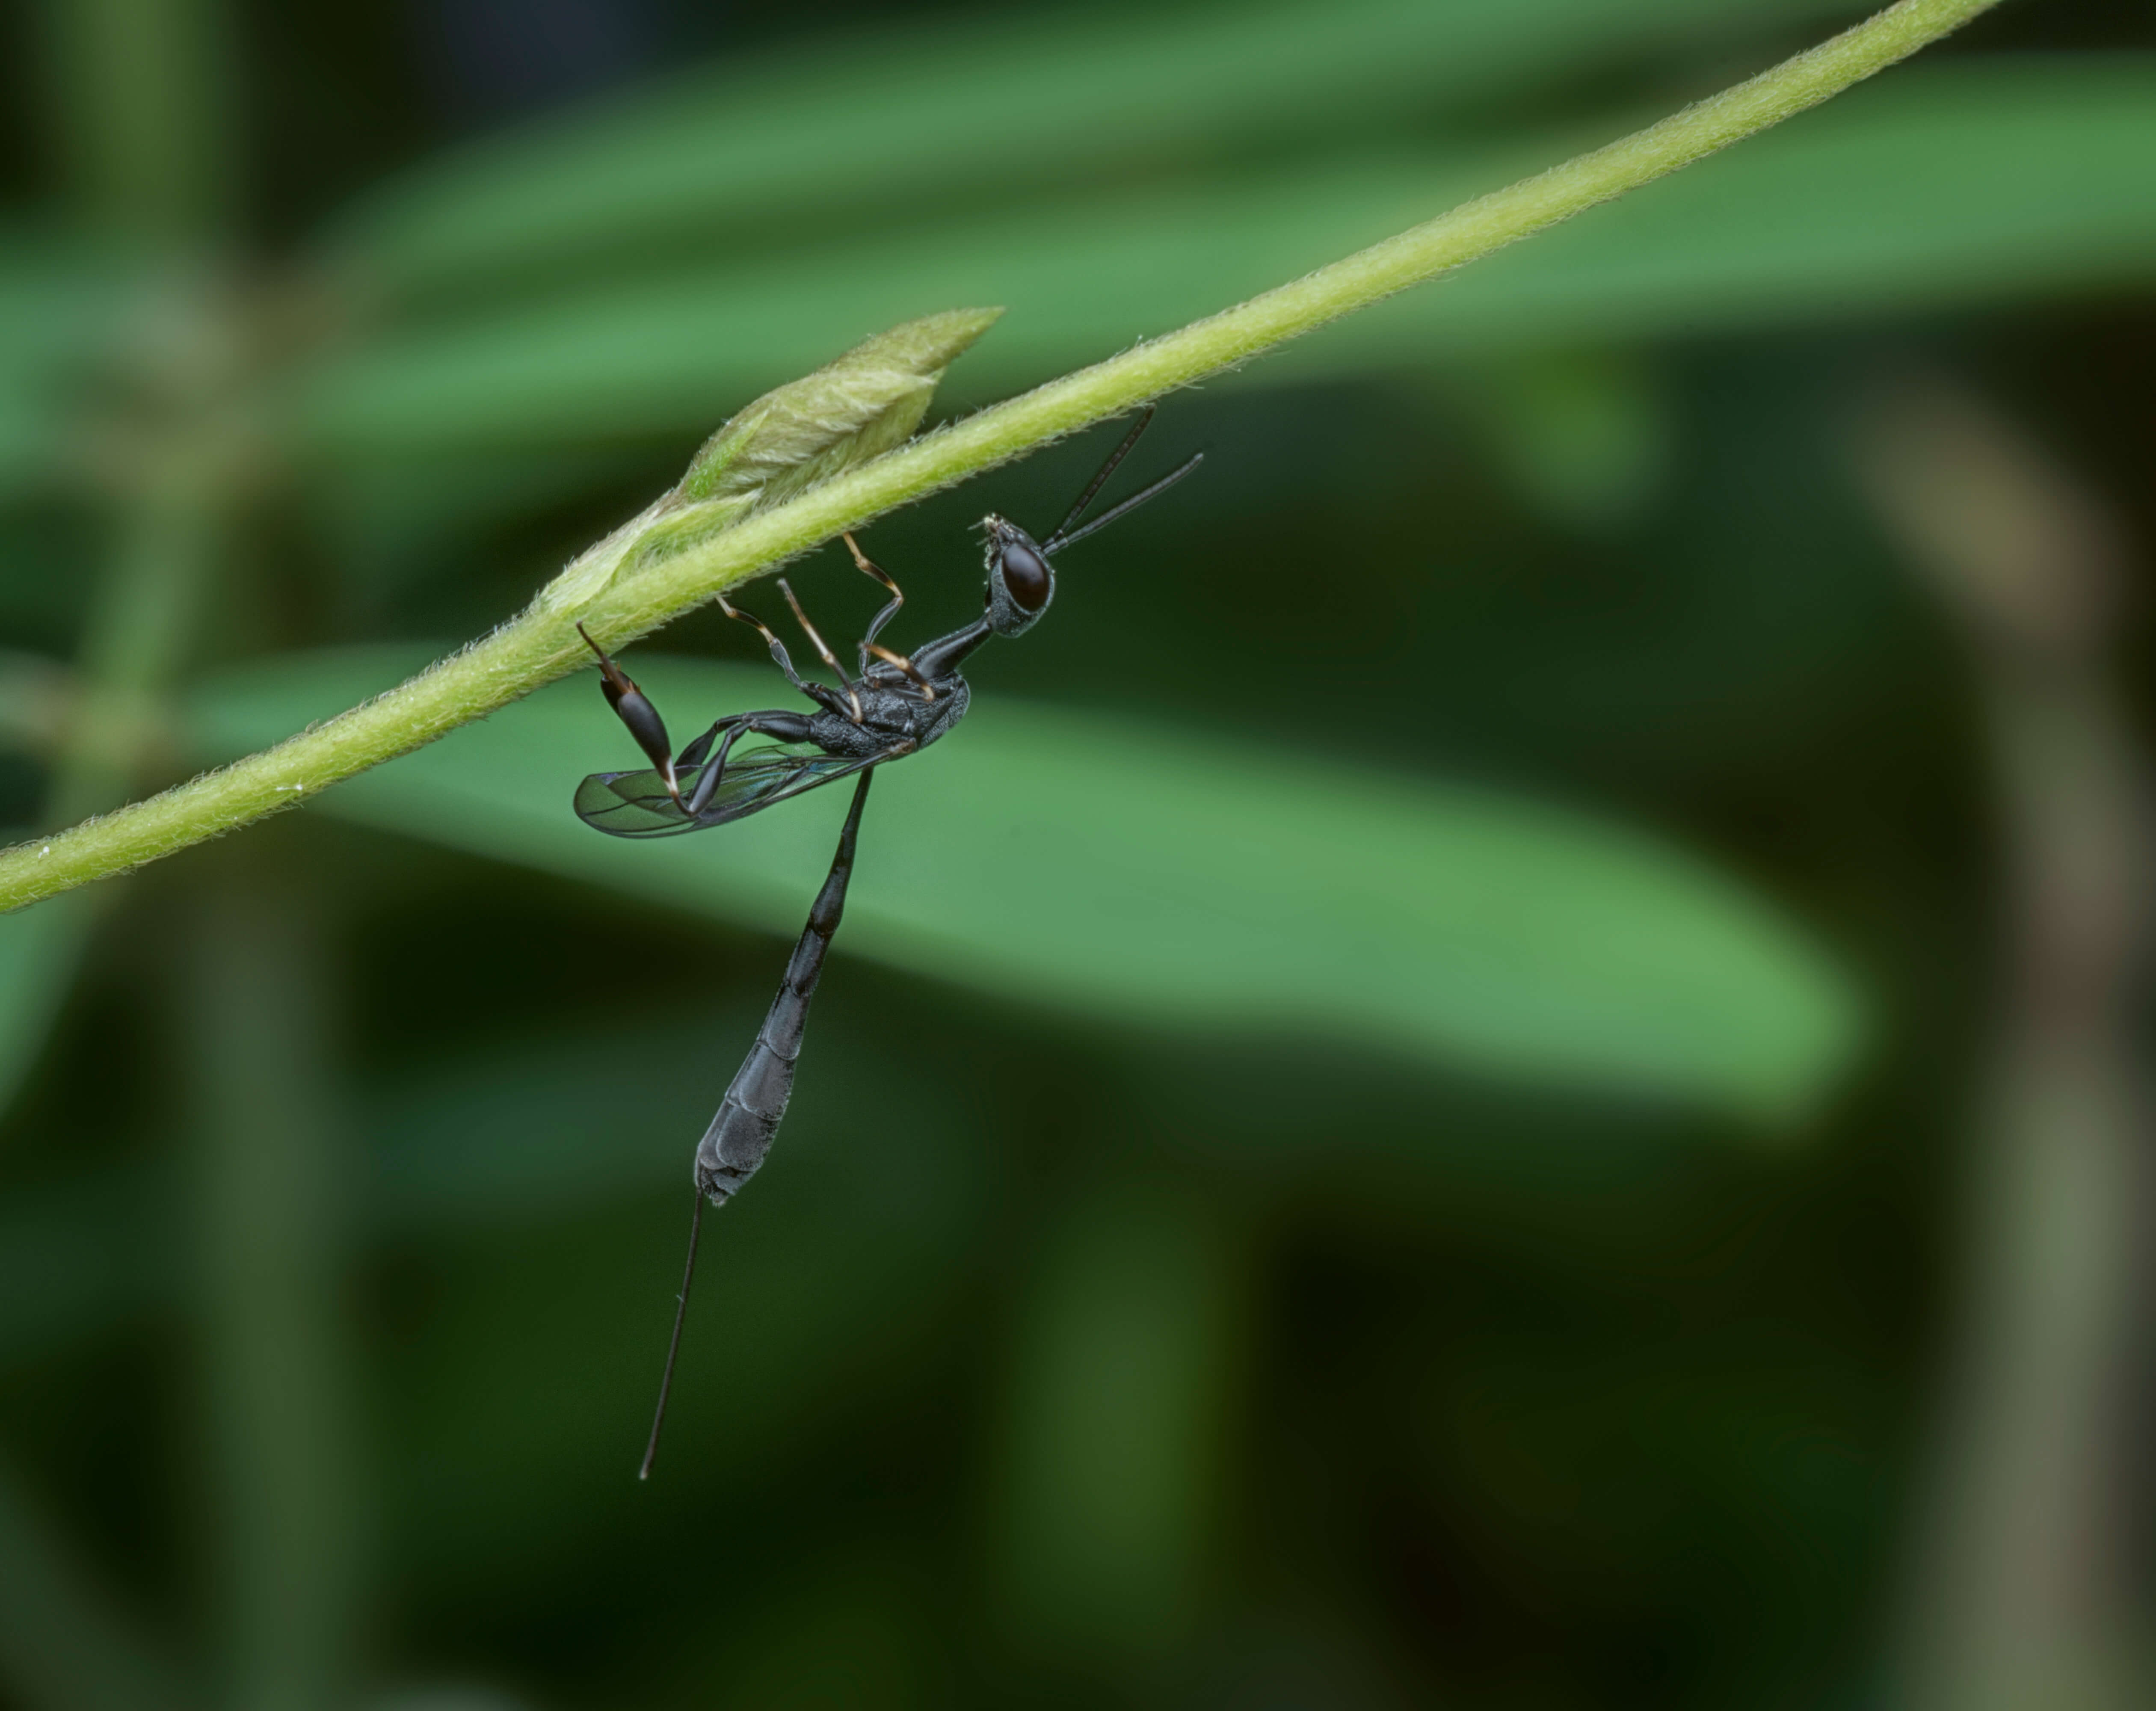 Ensign Wasp On Leaf